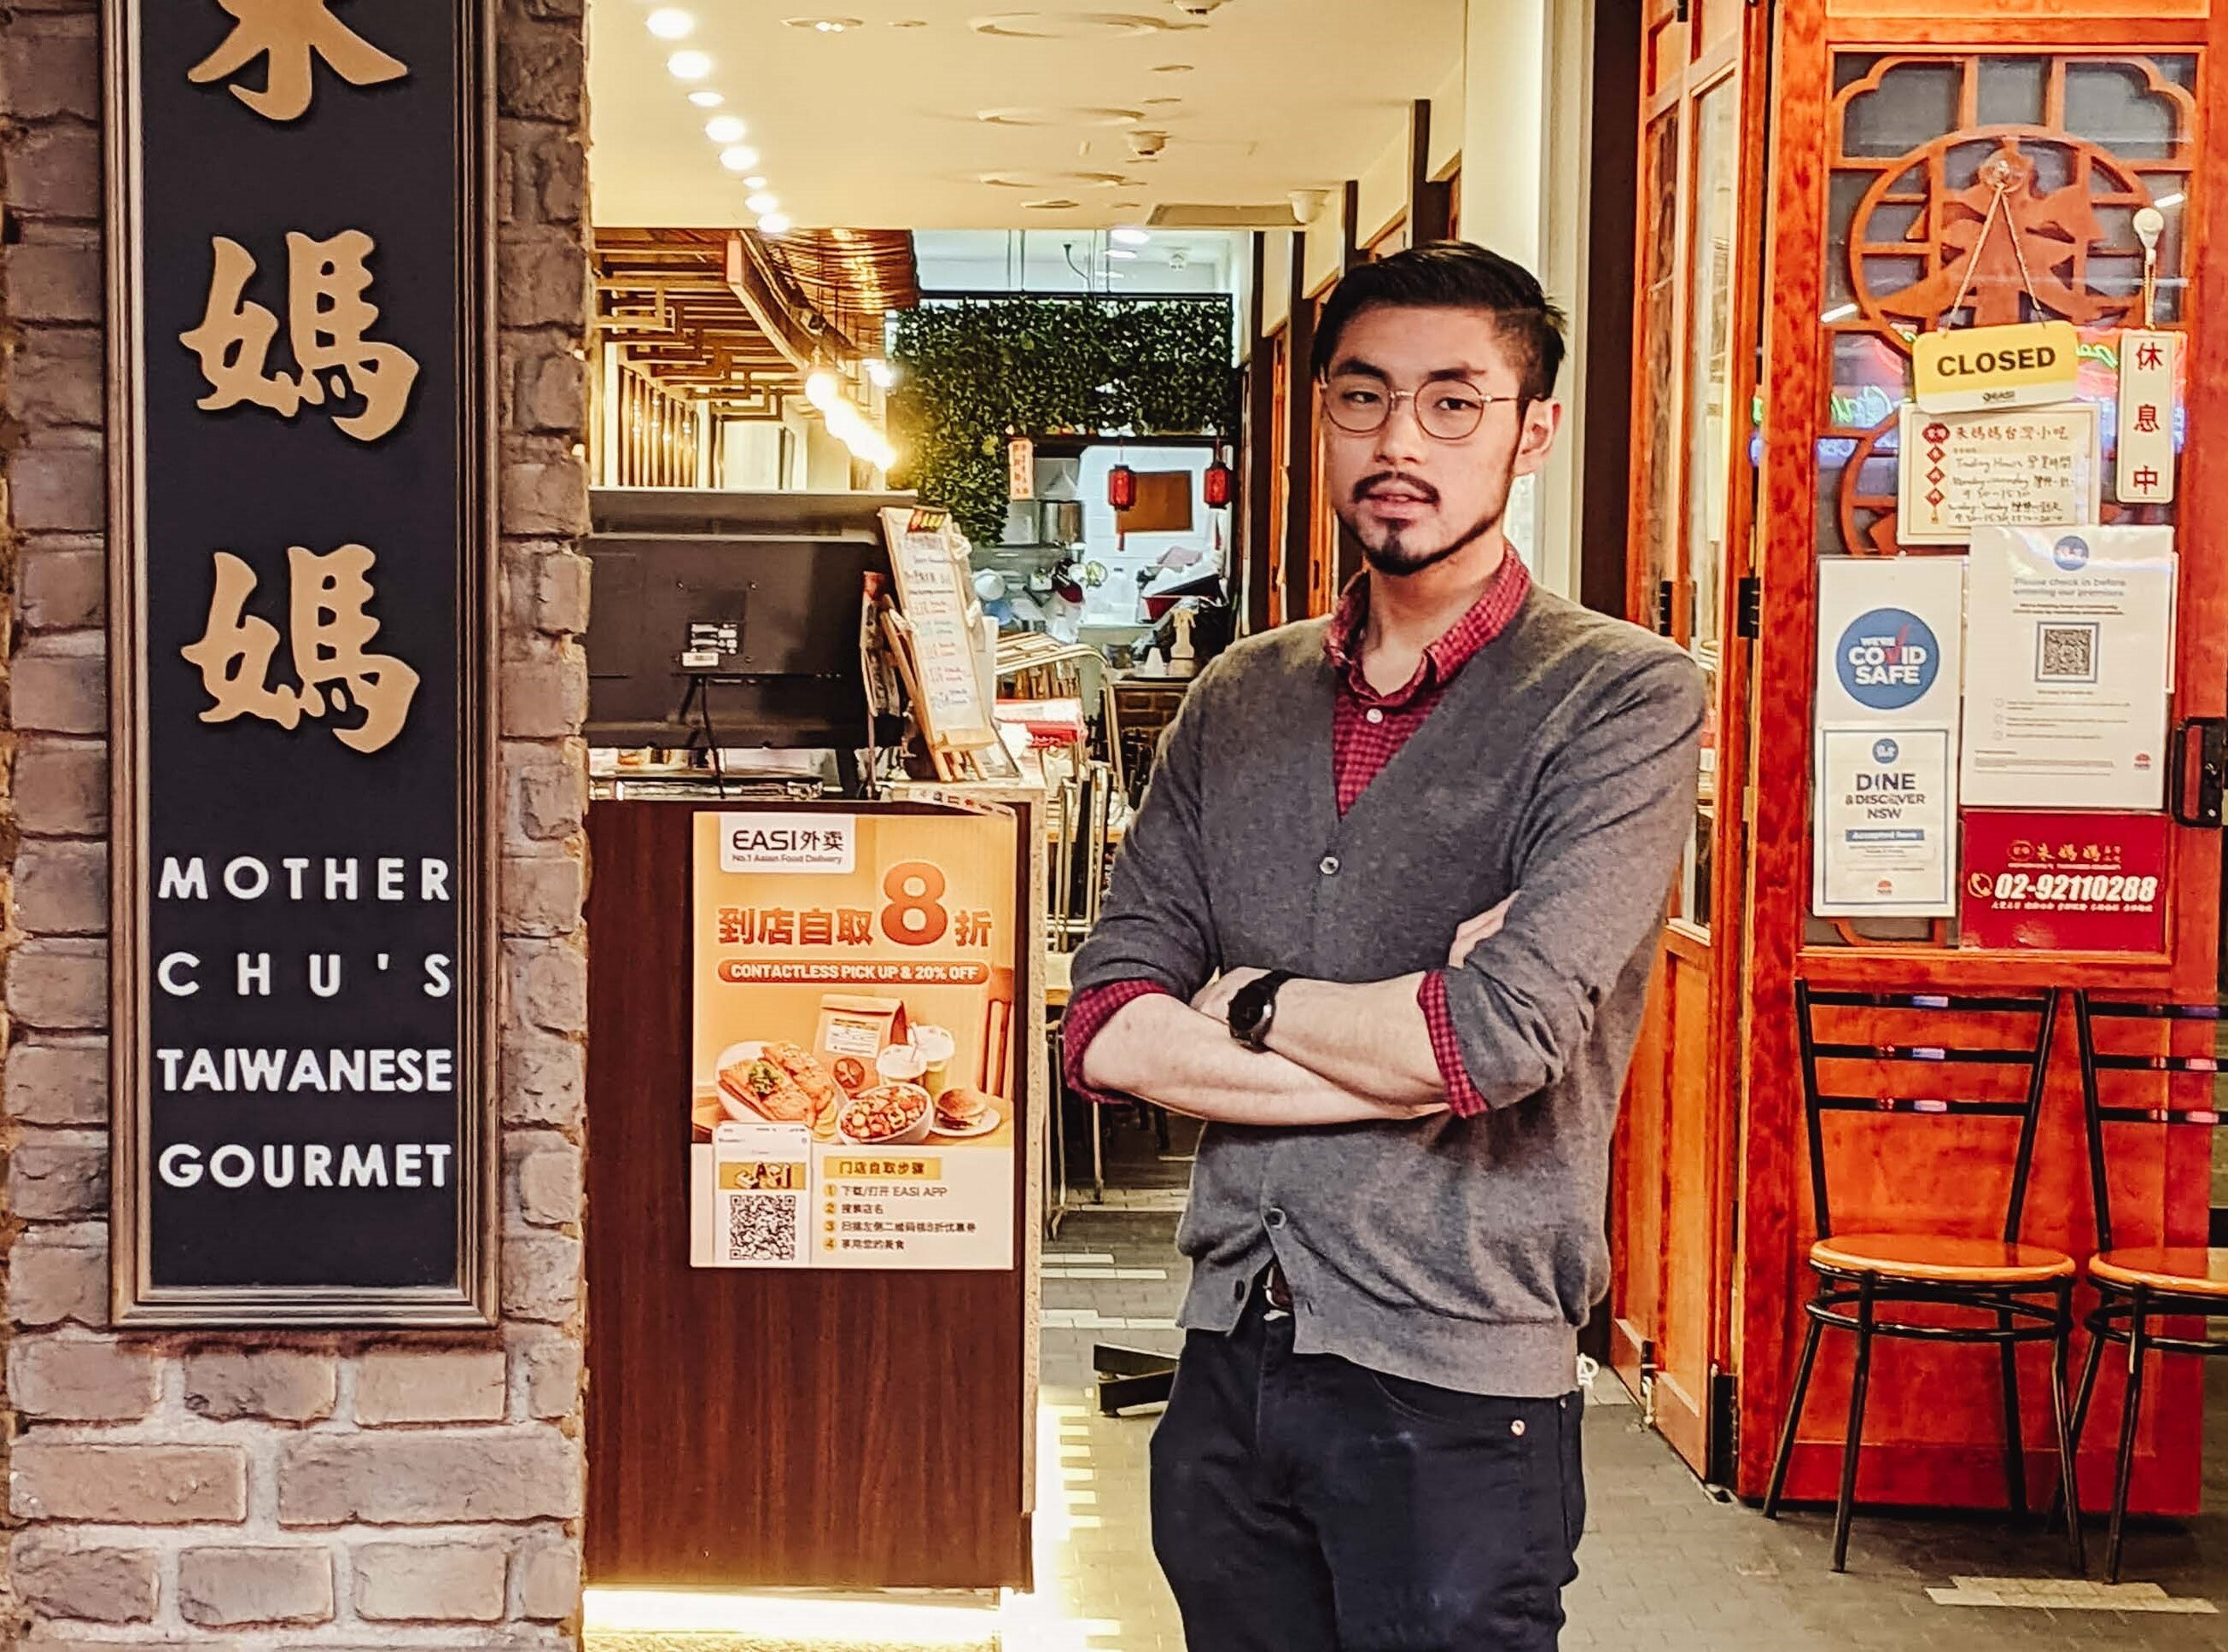 Alan Chu, propriétaire du restaurant gastronomique taïwanais Mother Chu dans le quartier chinois de Sydney.